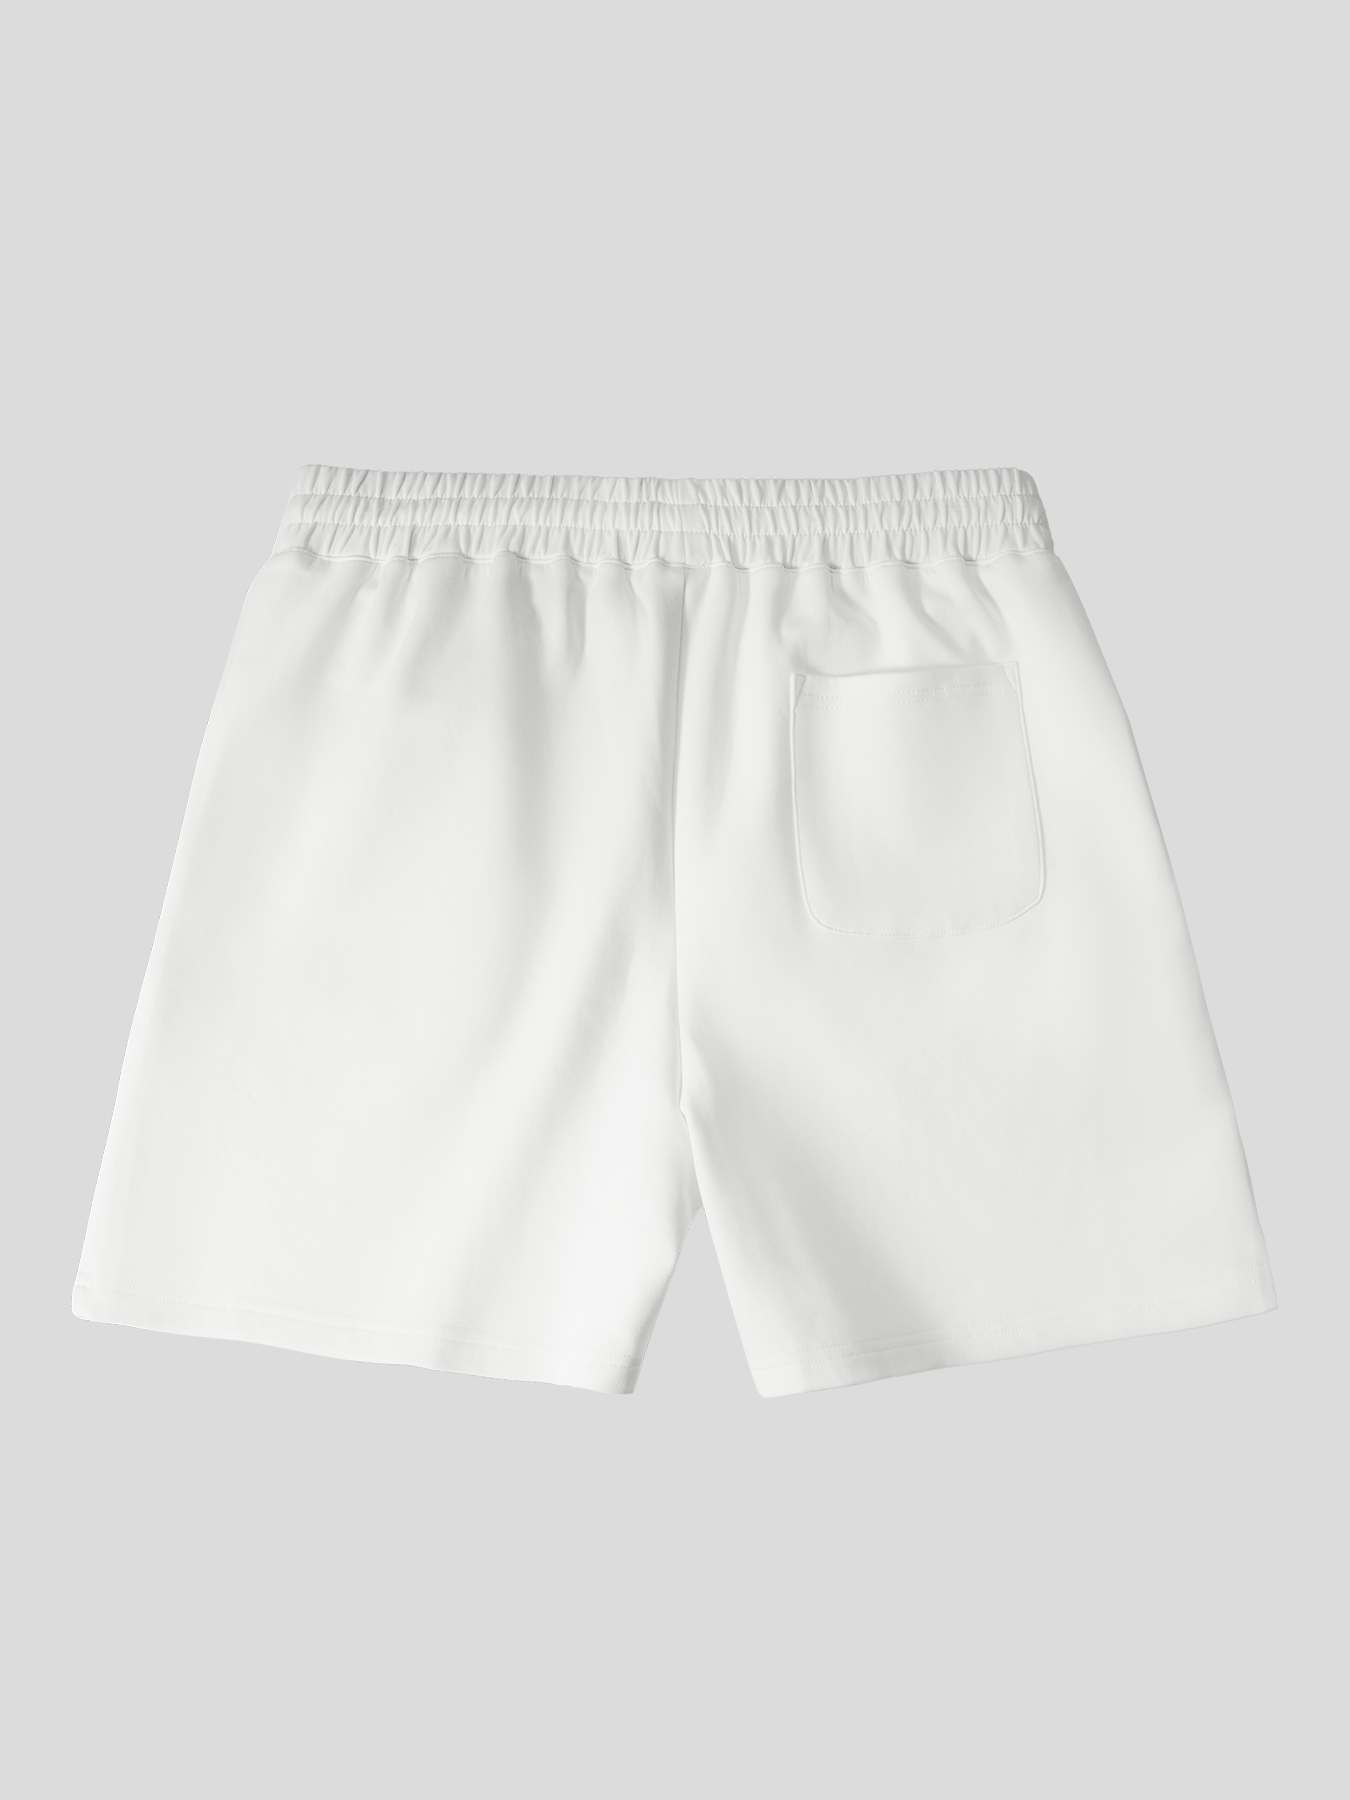 Modal Blend 2.0 Active Comfort 6&quot; Shorts